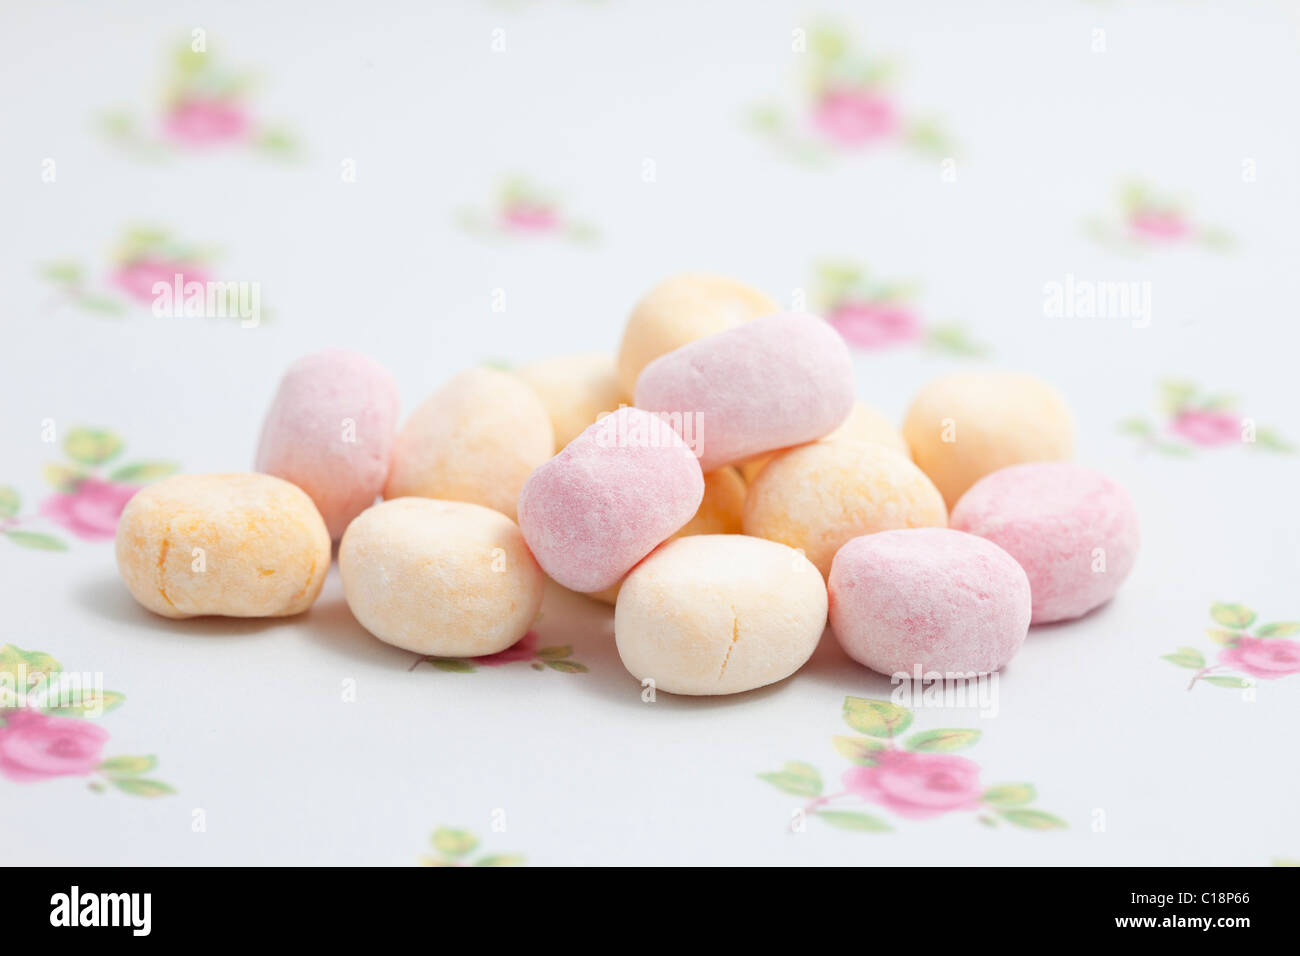 Rhabarber und Vanillesauce Bonbons-Bonbons und Süßigkeiten auf ein Papierhintergrund fotografiert in einem studio Stockfoto